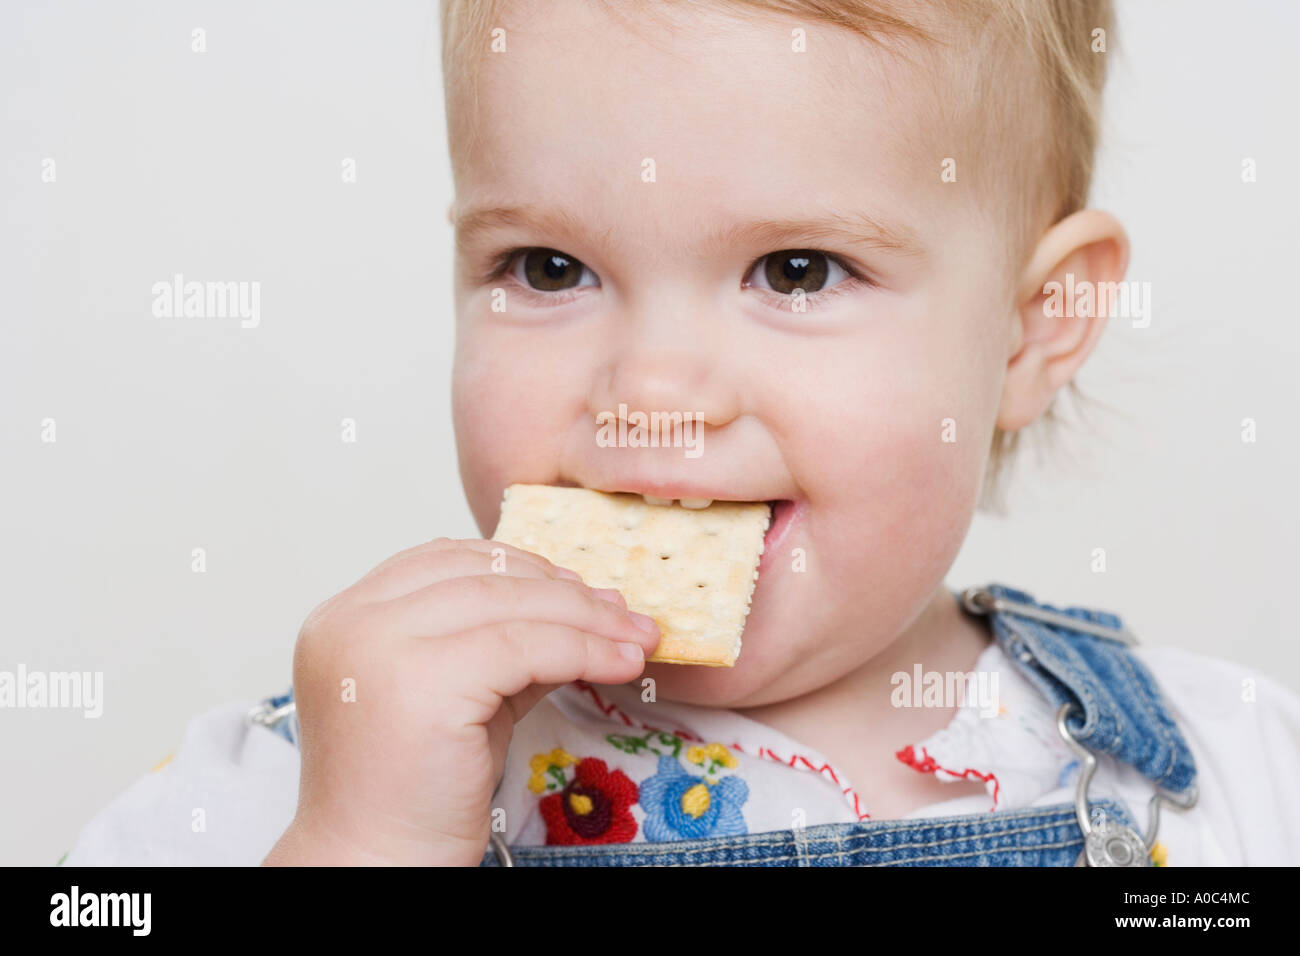 Female toddler eating a cracker Banque D'Images